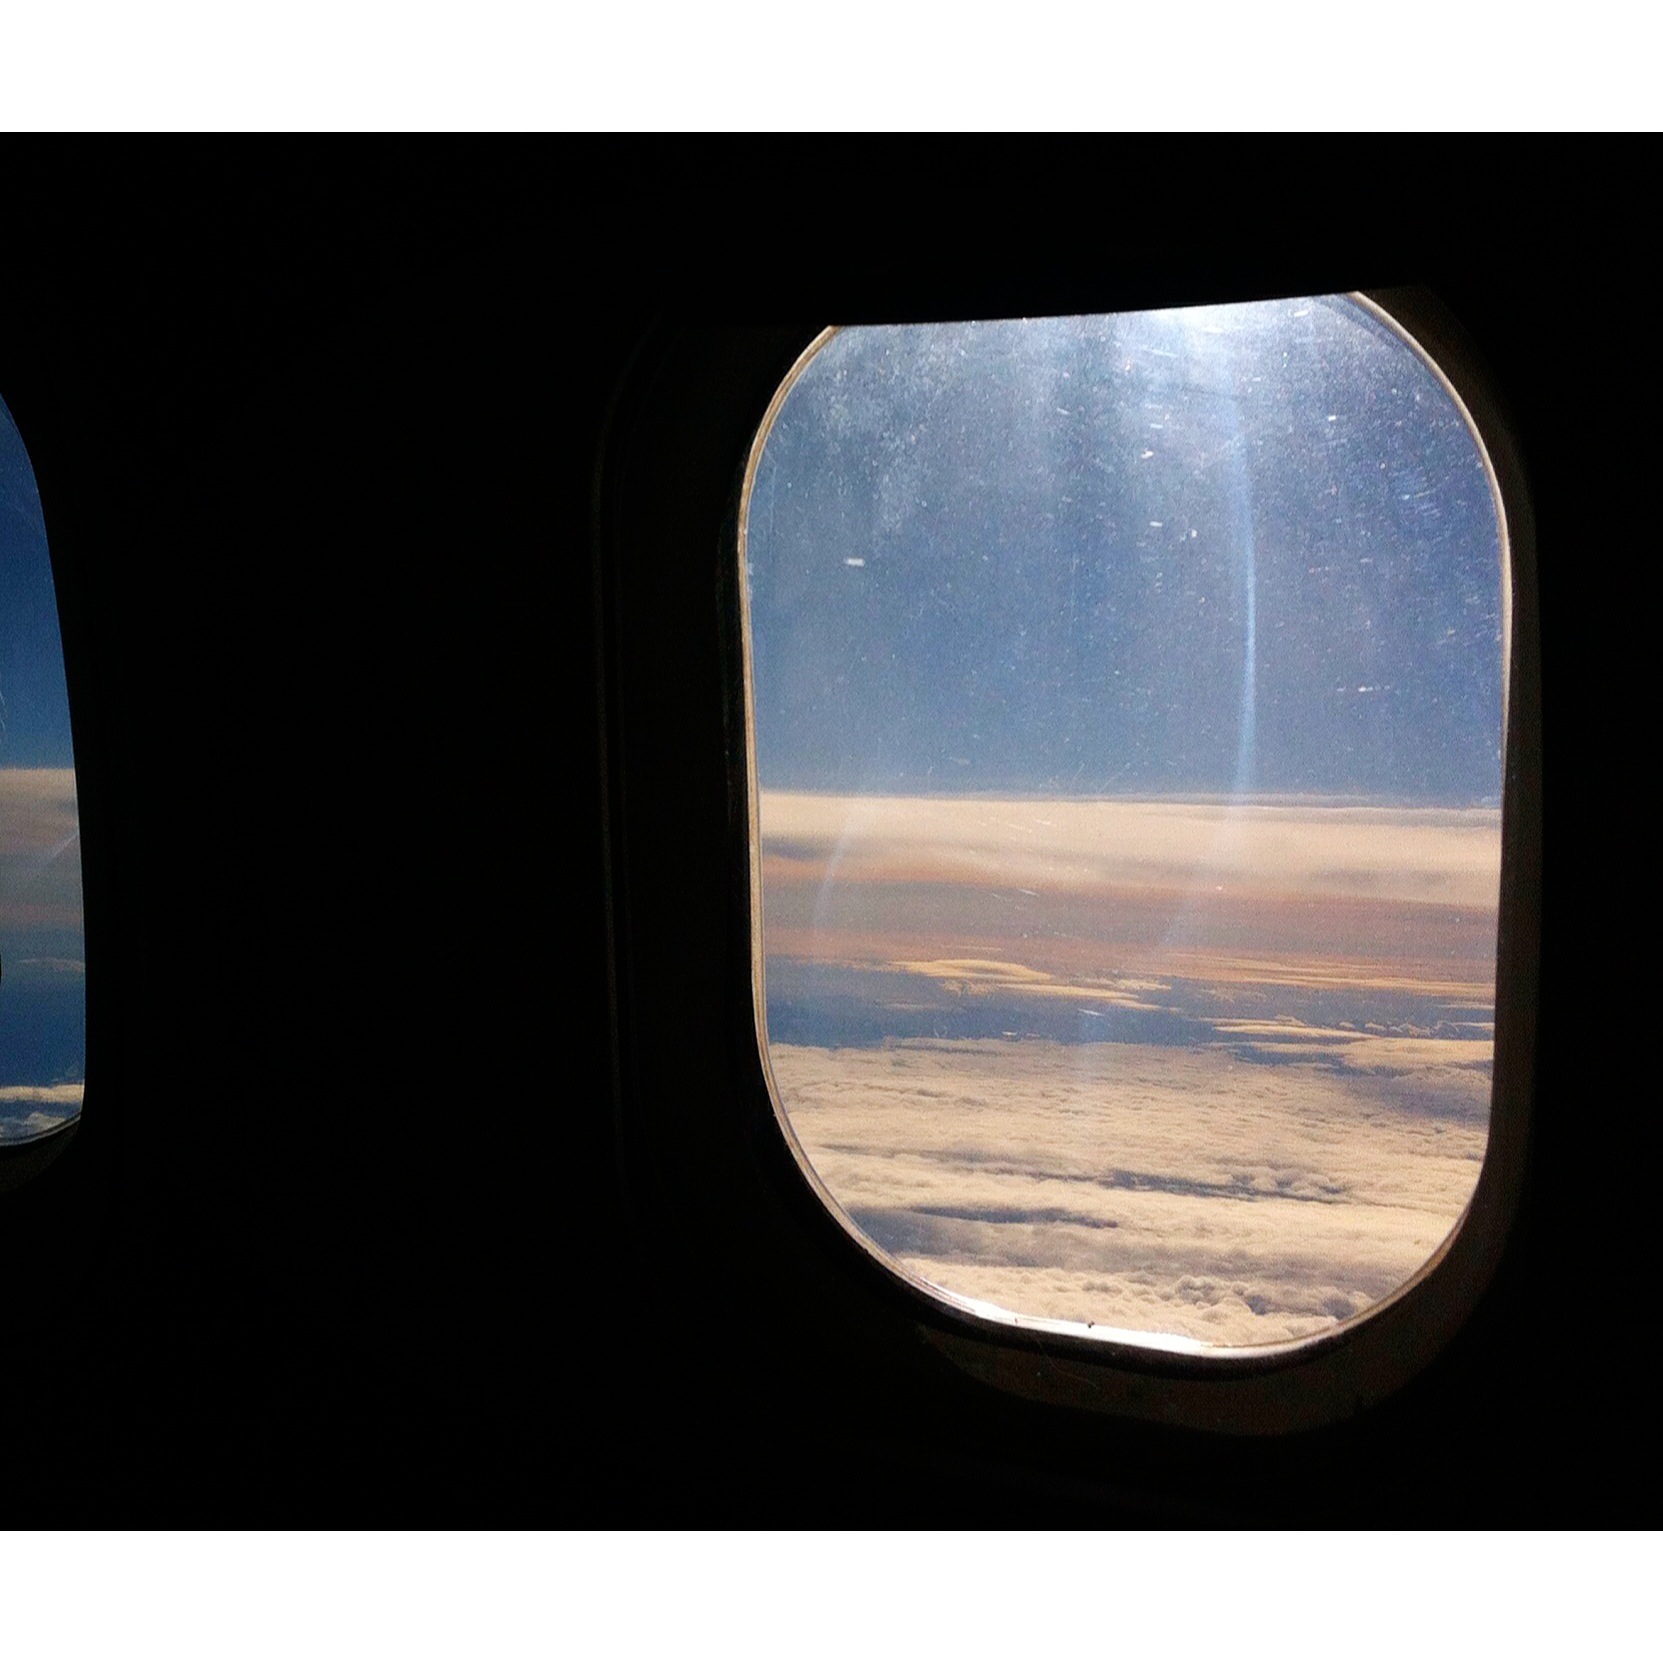 Airplane View © Forbidden Rice Blog 2015